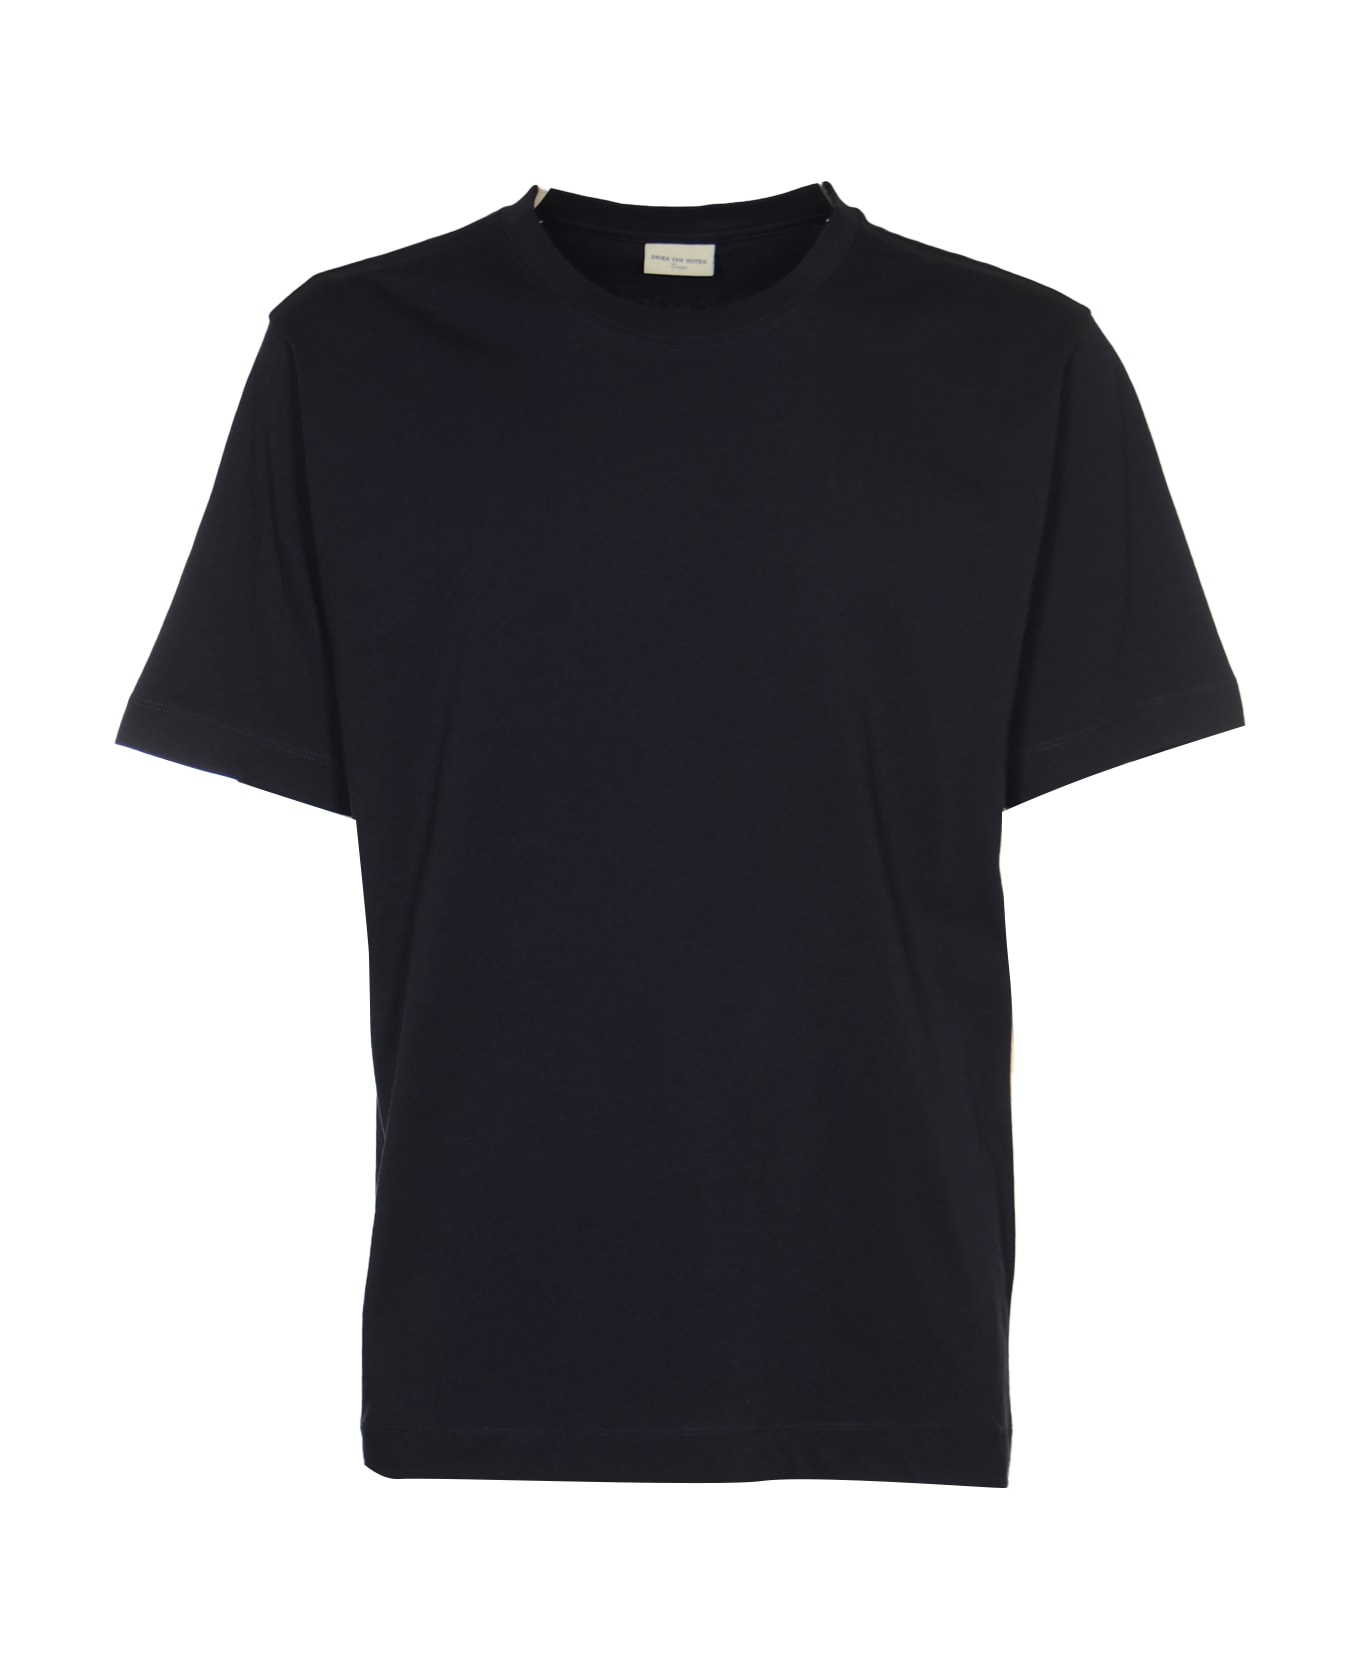 Dries Van Noten Hertz T-shirt - Navy